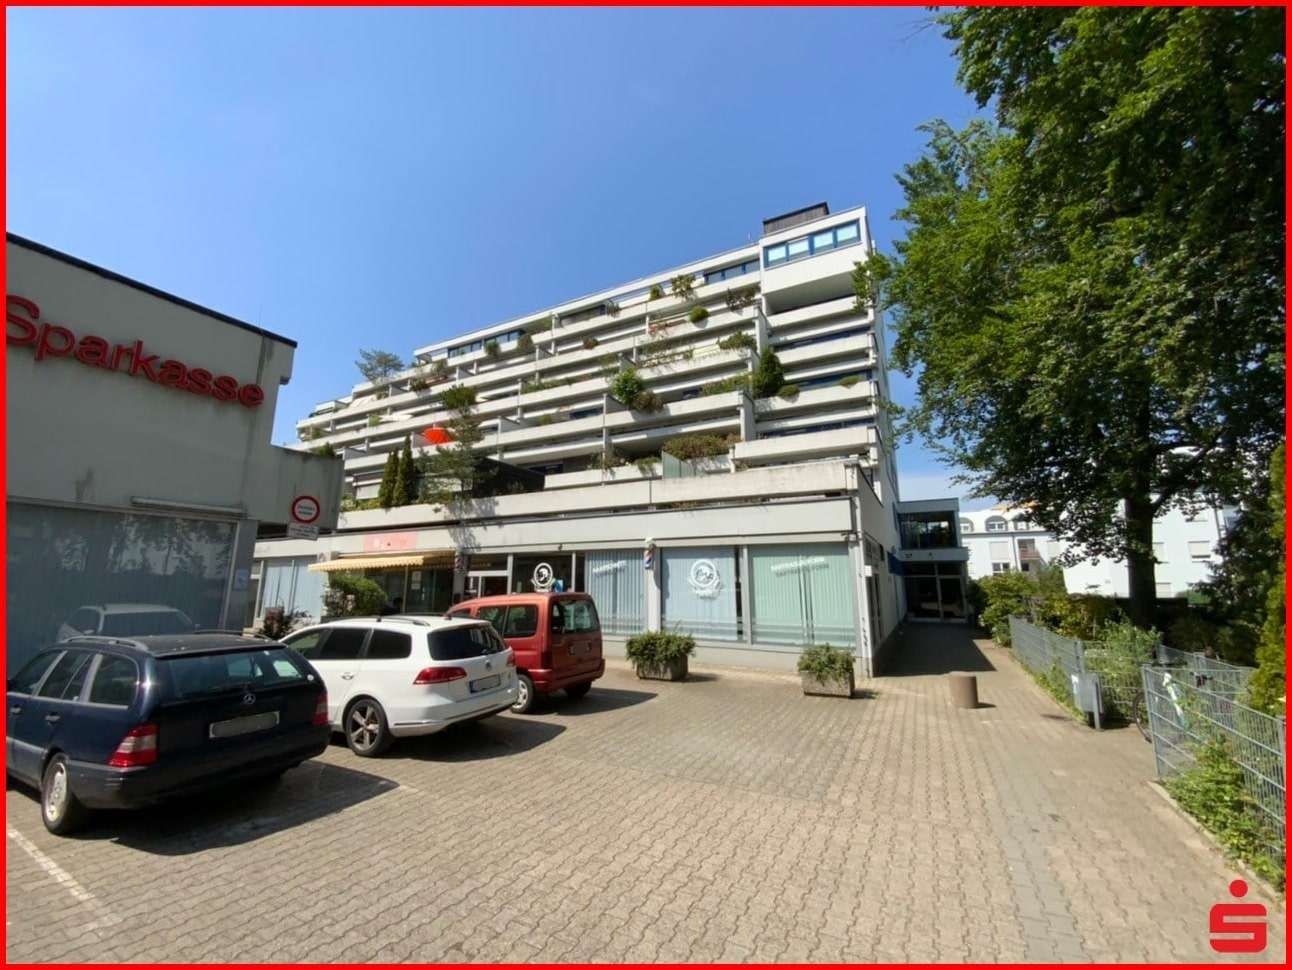 null - Etagenwohnung in 64297 Darmstadt mit 73m² günstig kaufen